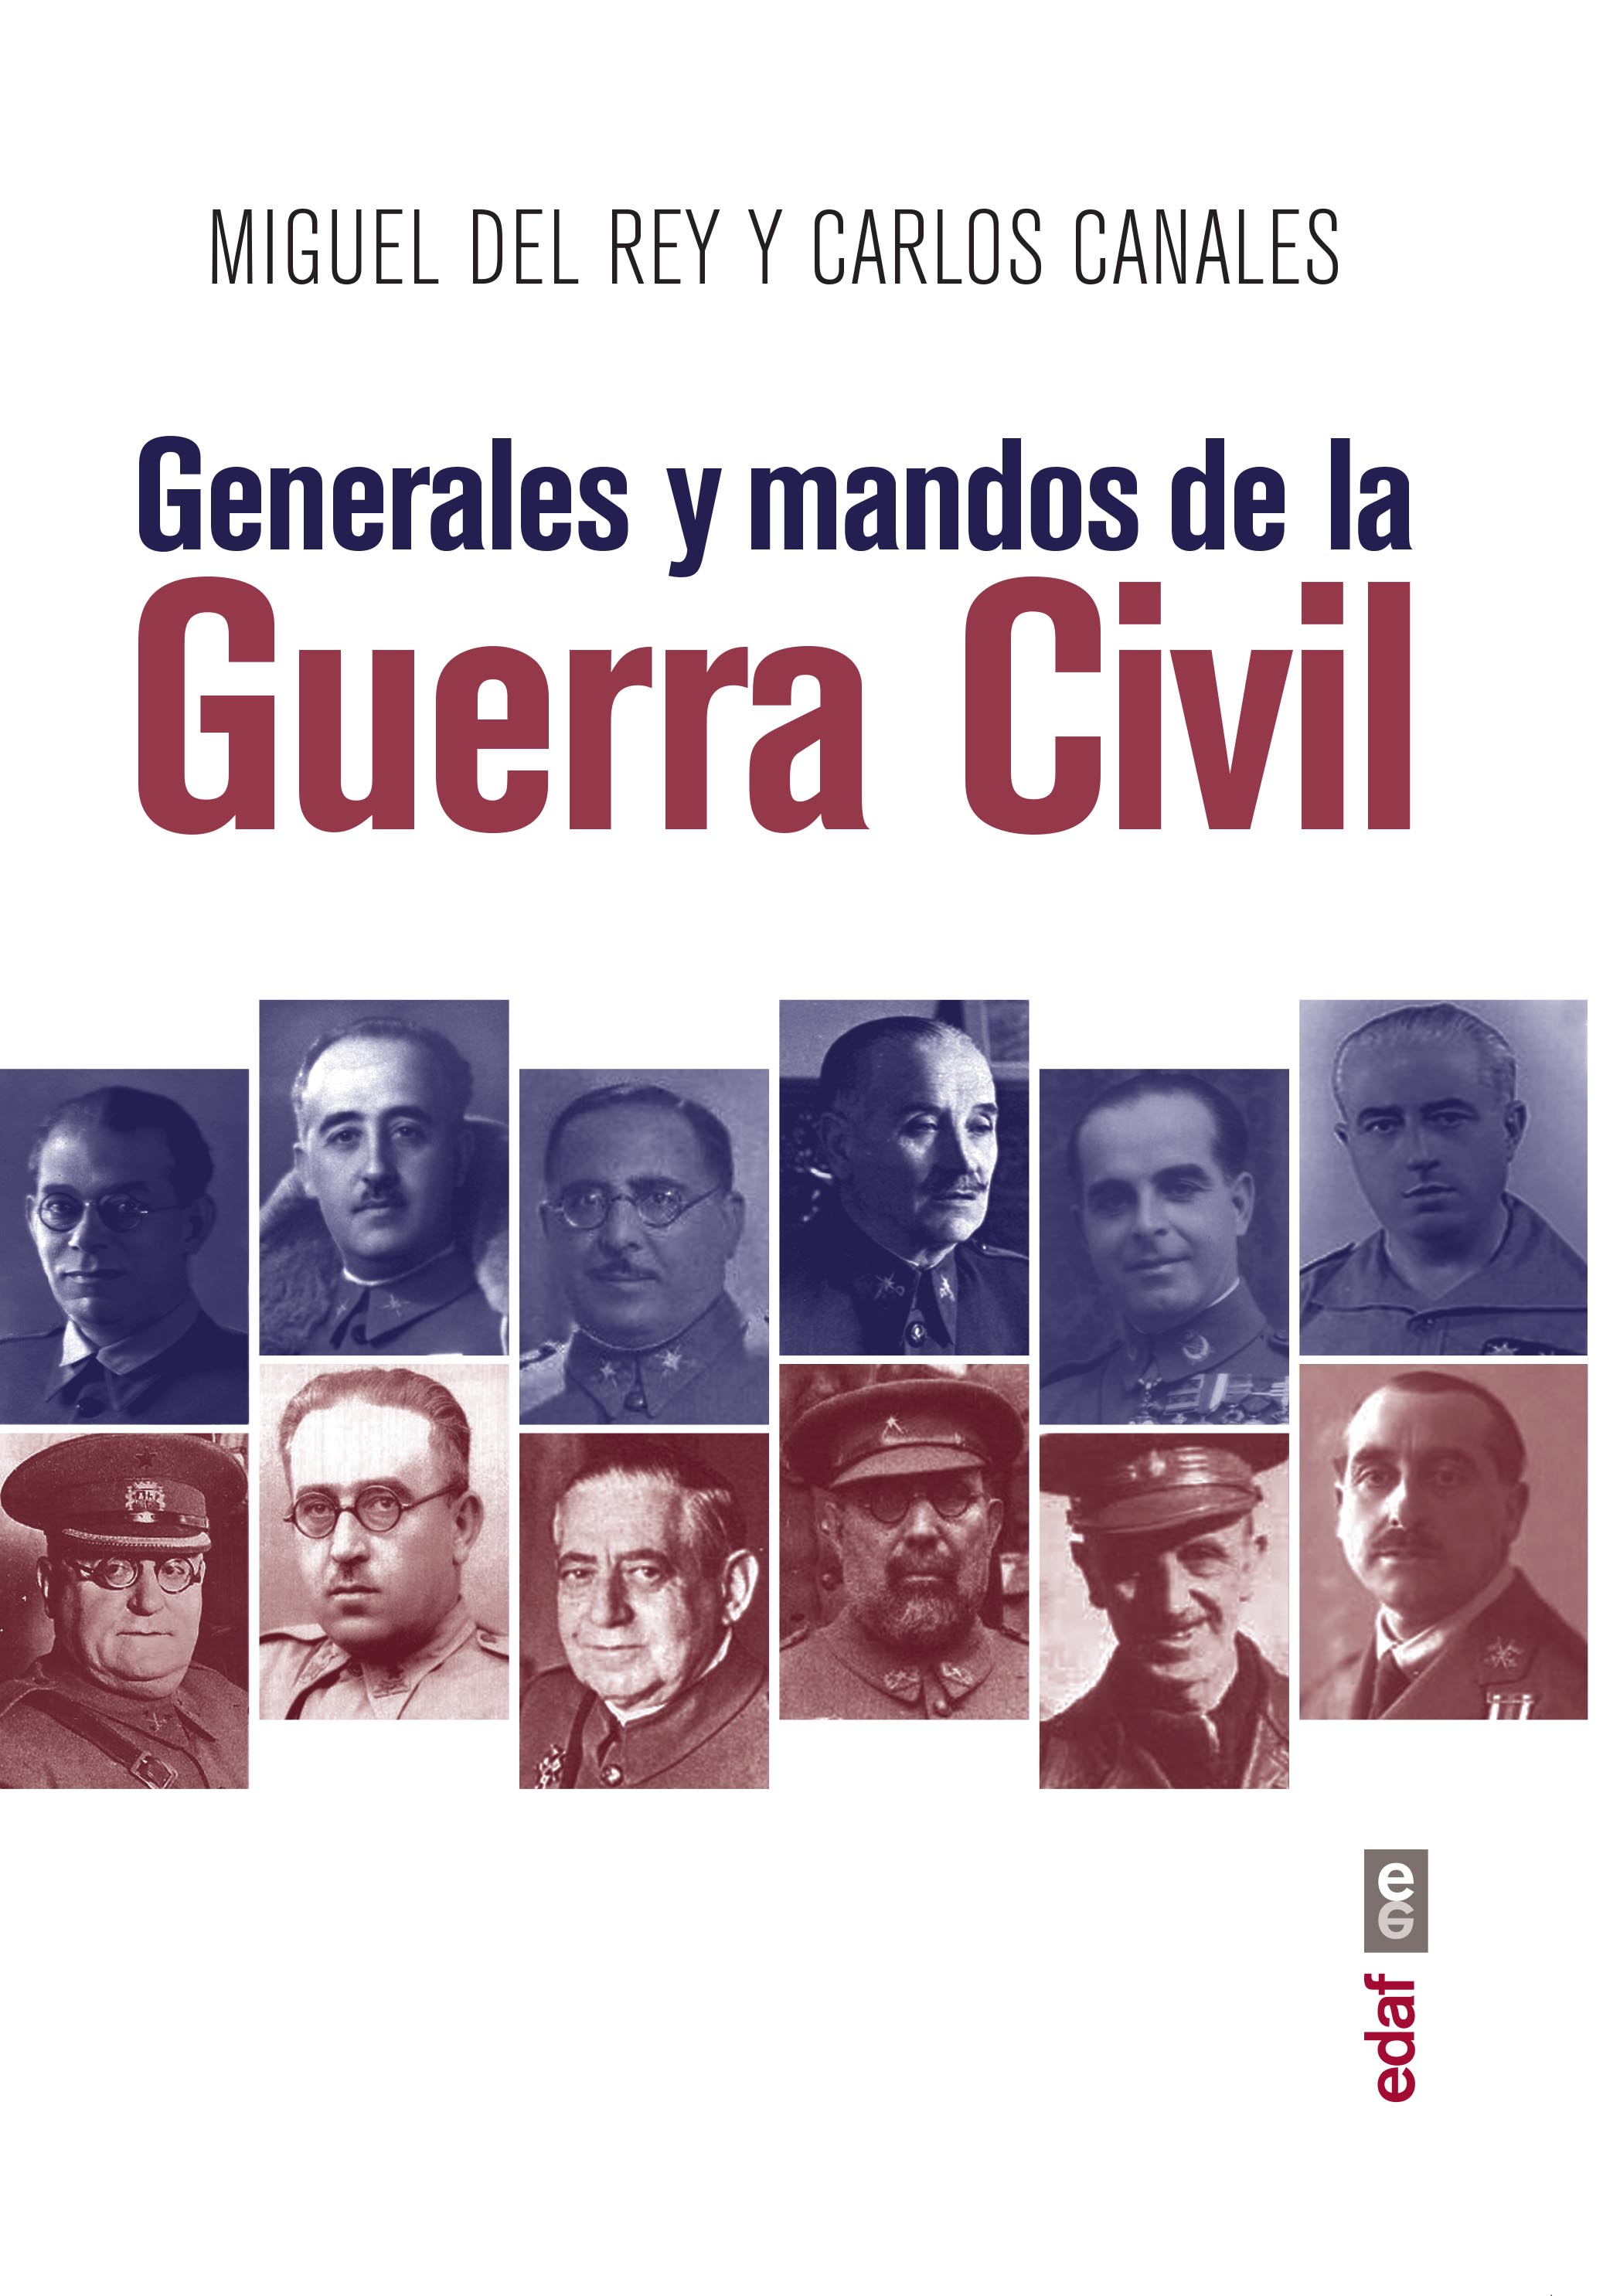 Presentación y coloquio en torno al libro Generales y mandos de la Guerra Civil. 378